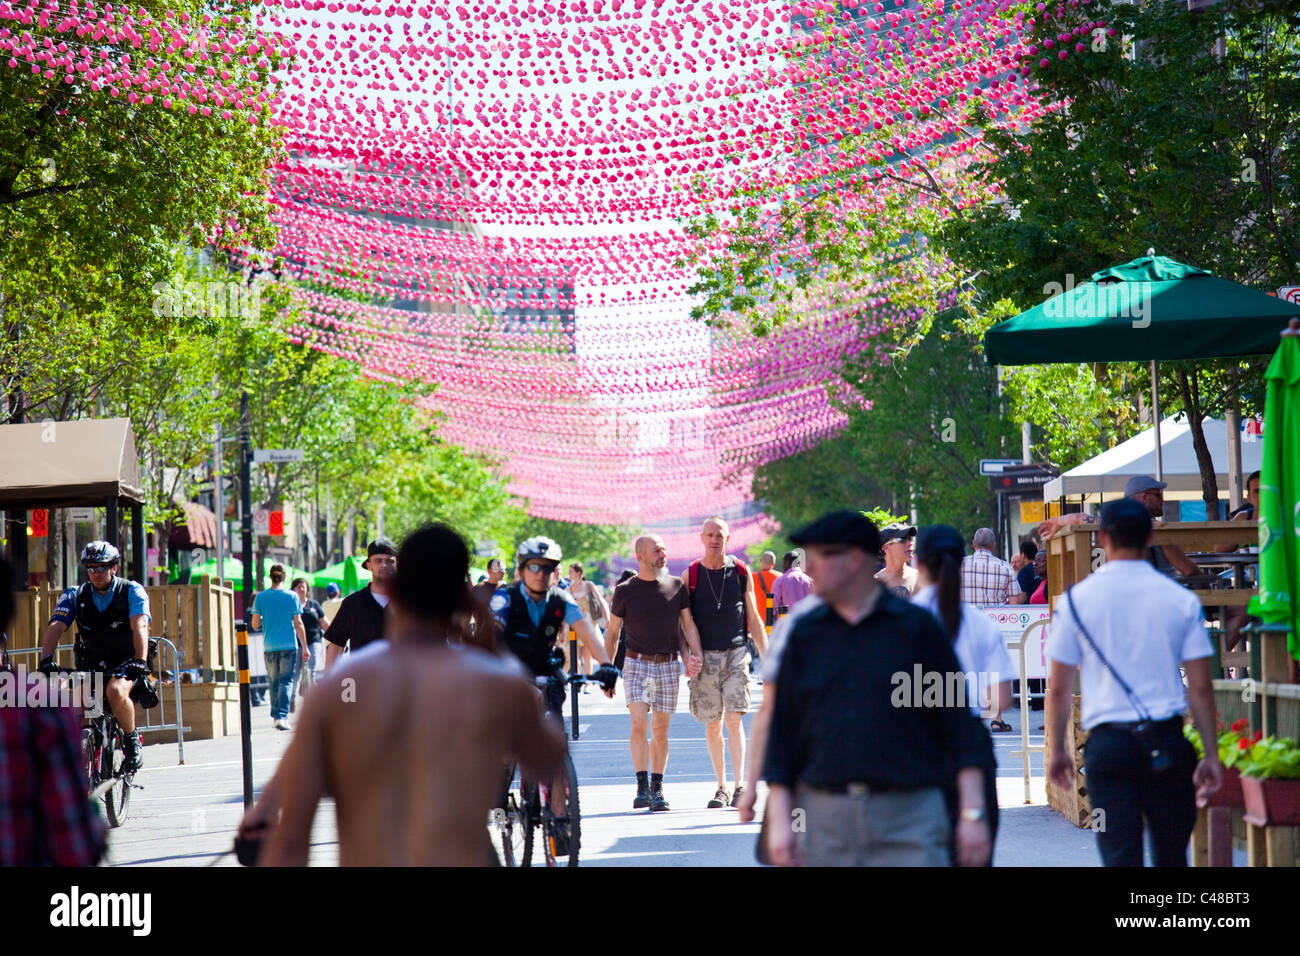 Las bolas de color rosa decoración Le Village gai o la aldea barrio gay de Montreal, Canadá Foto de stock